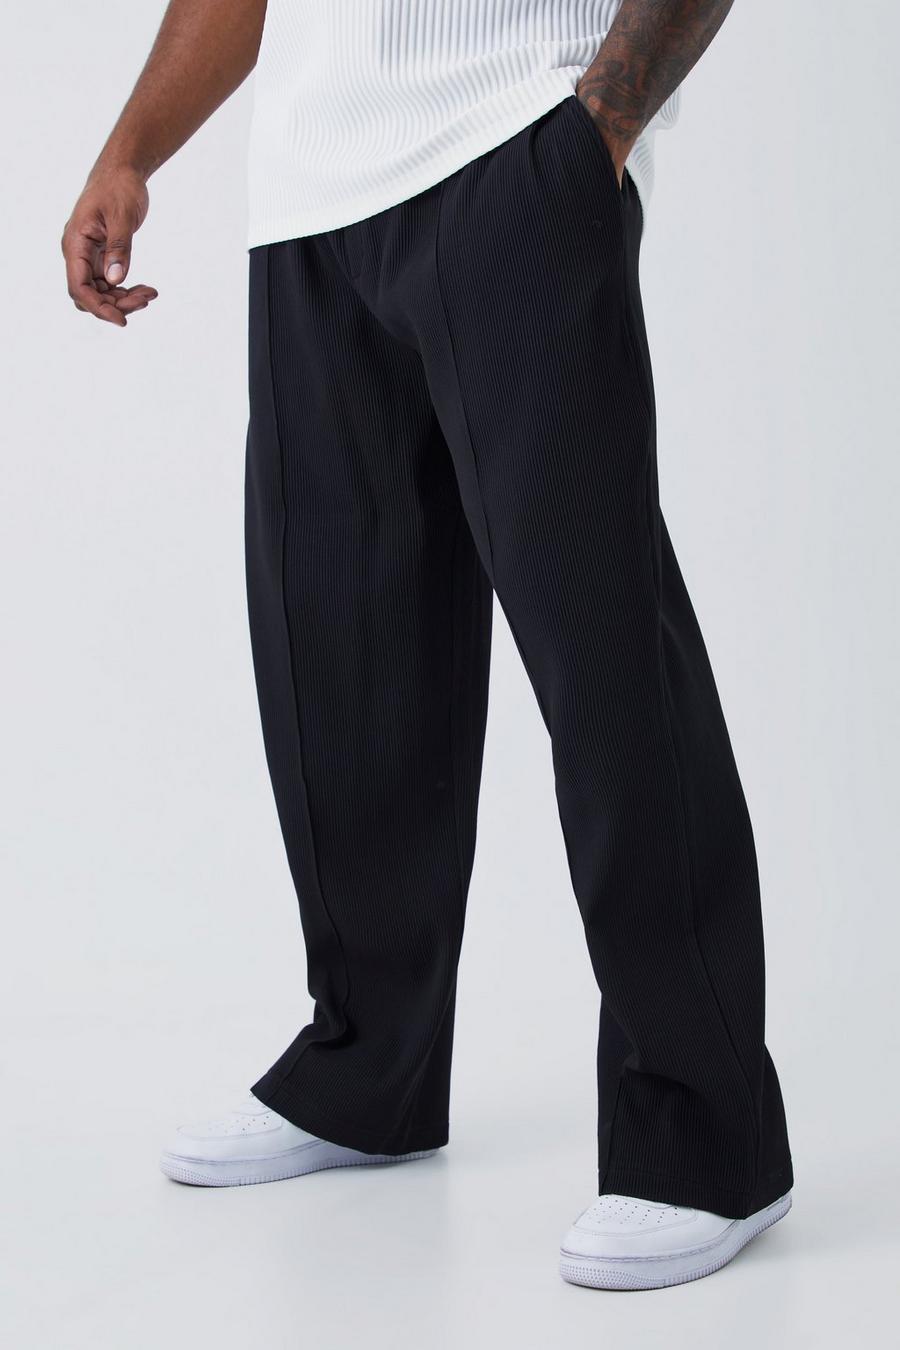 Plus size men's trousers, XXS - 3 XL